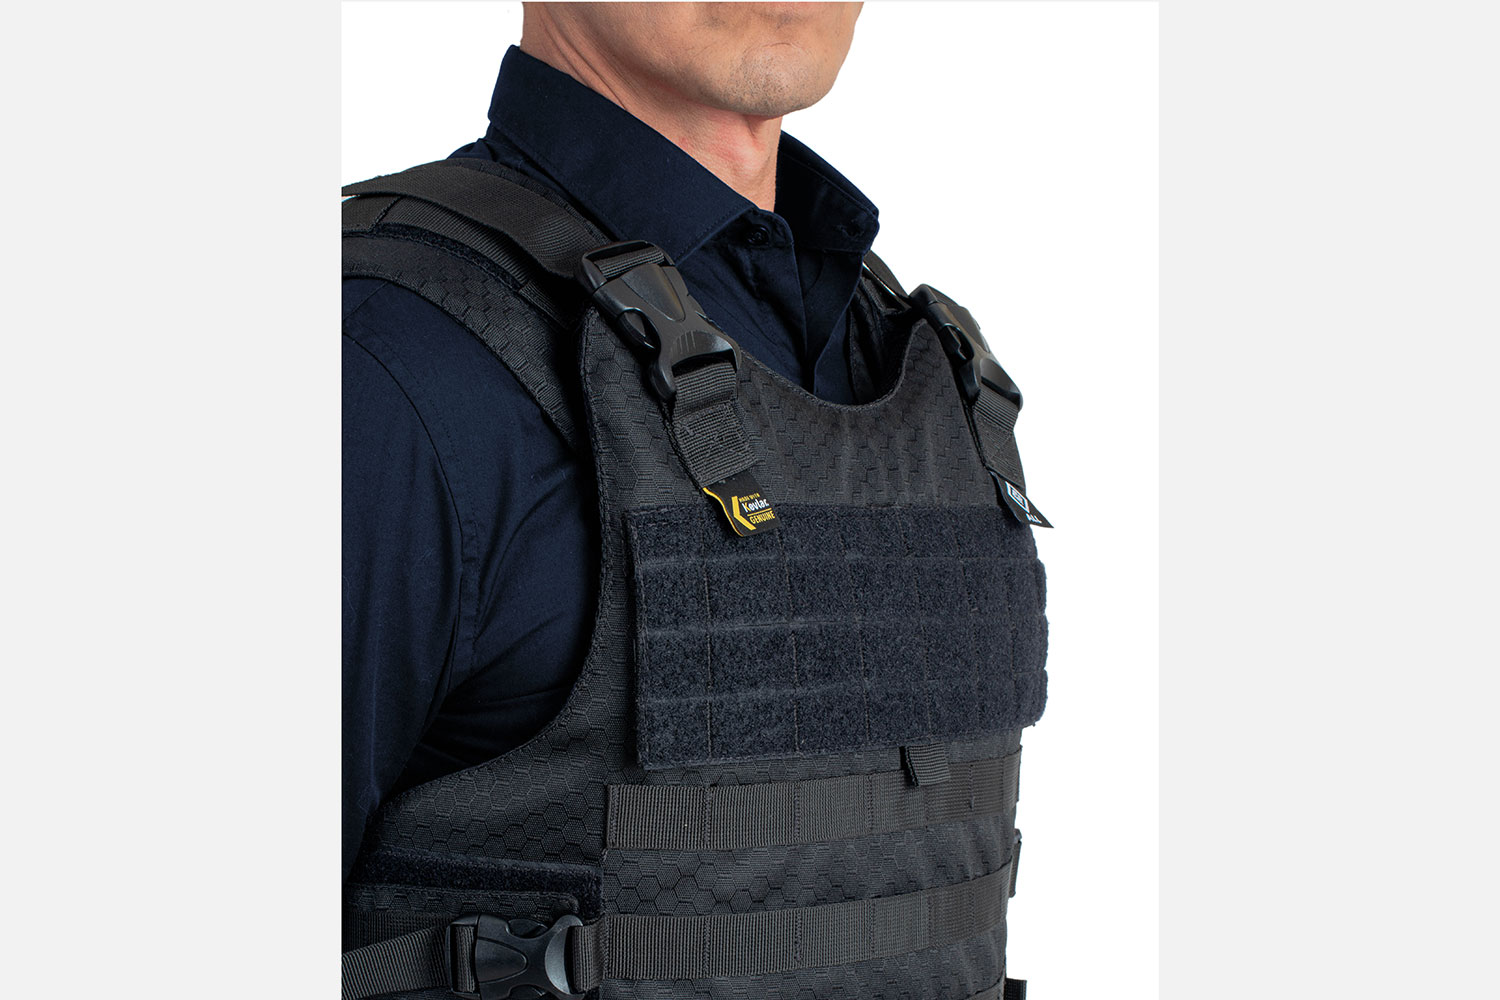 Chaleco Antibalas Policial, Protección Balística 2A & 3A